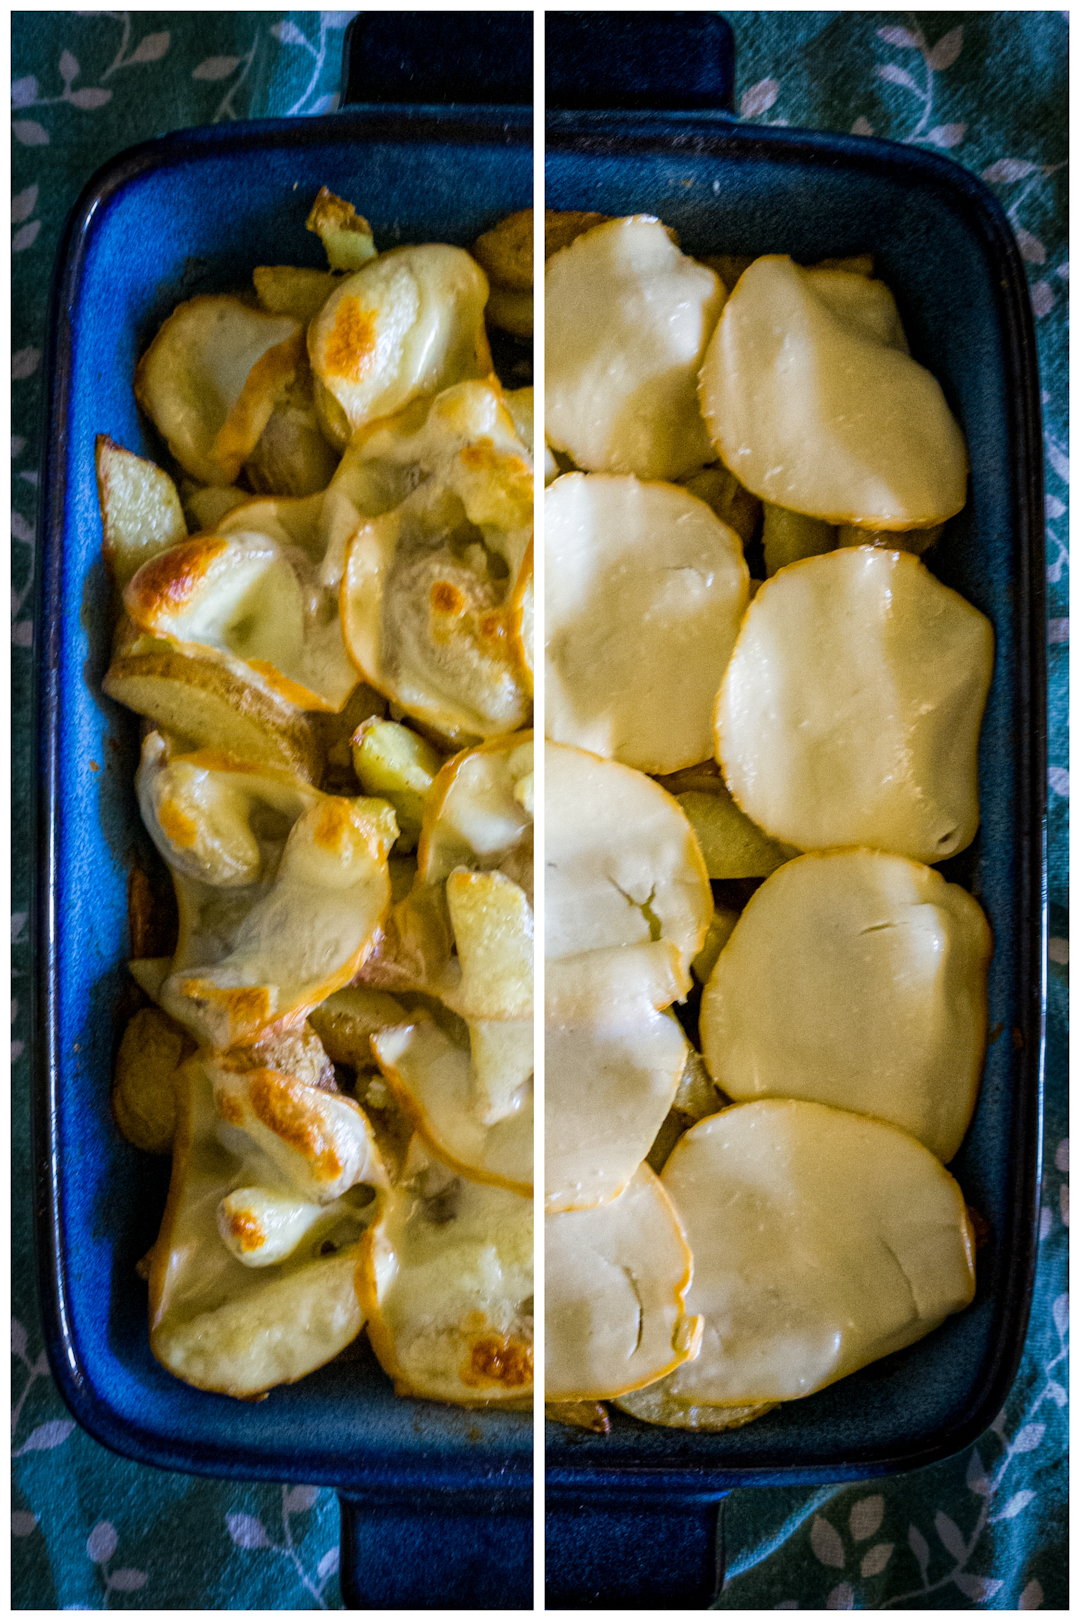 ziemniaki zapiekane, collage: gotowa zapiekanka i pieczone ziemniaki przykryte plasterkami sera